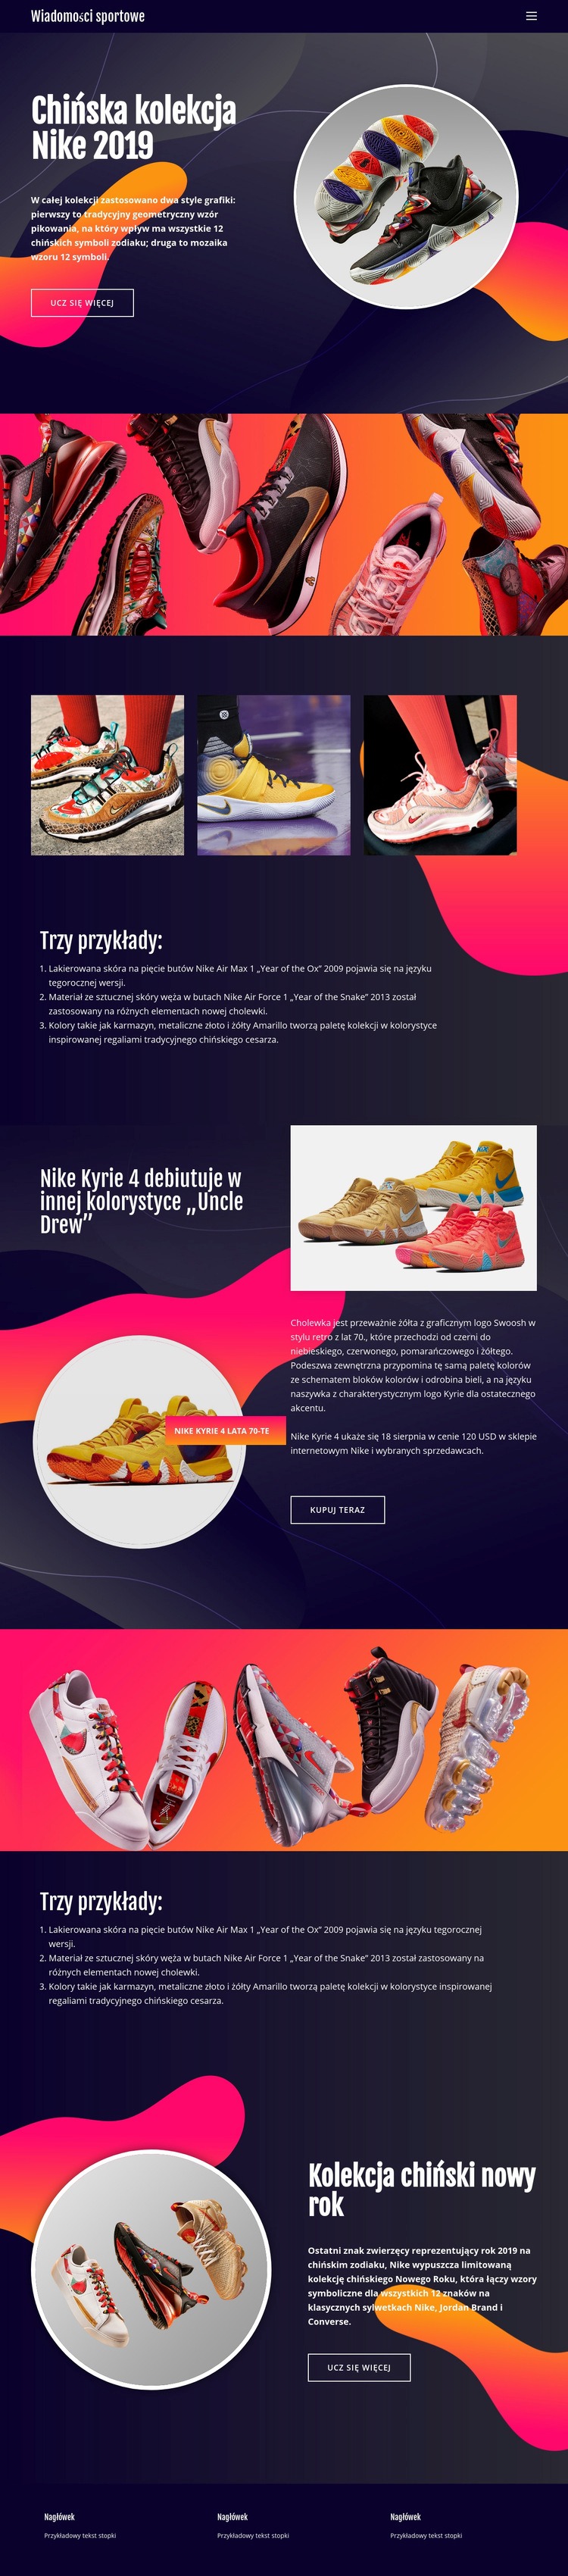 Kolekcja Nike Makieta strony internetowej